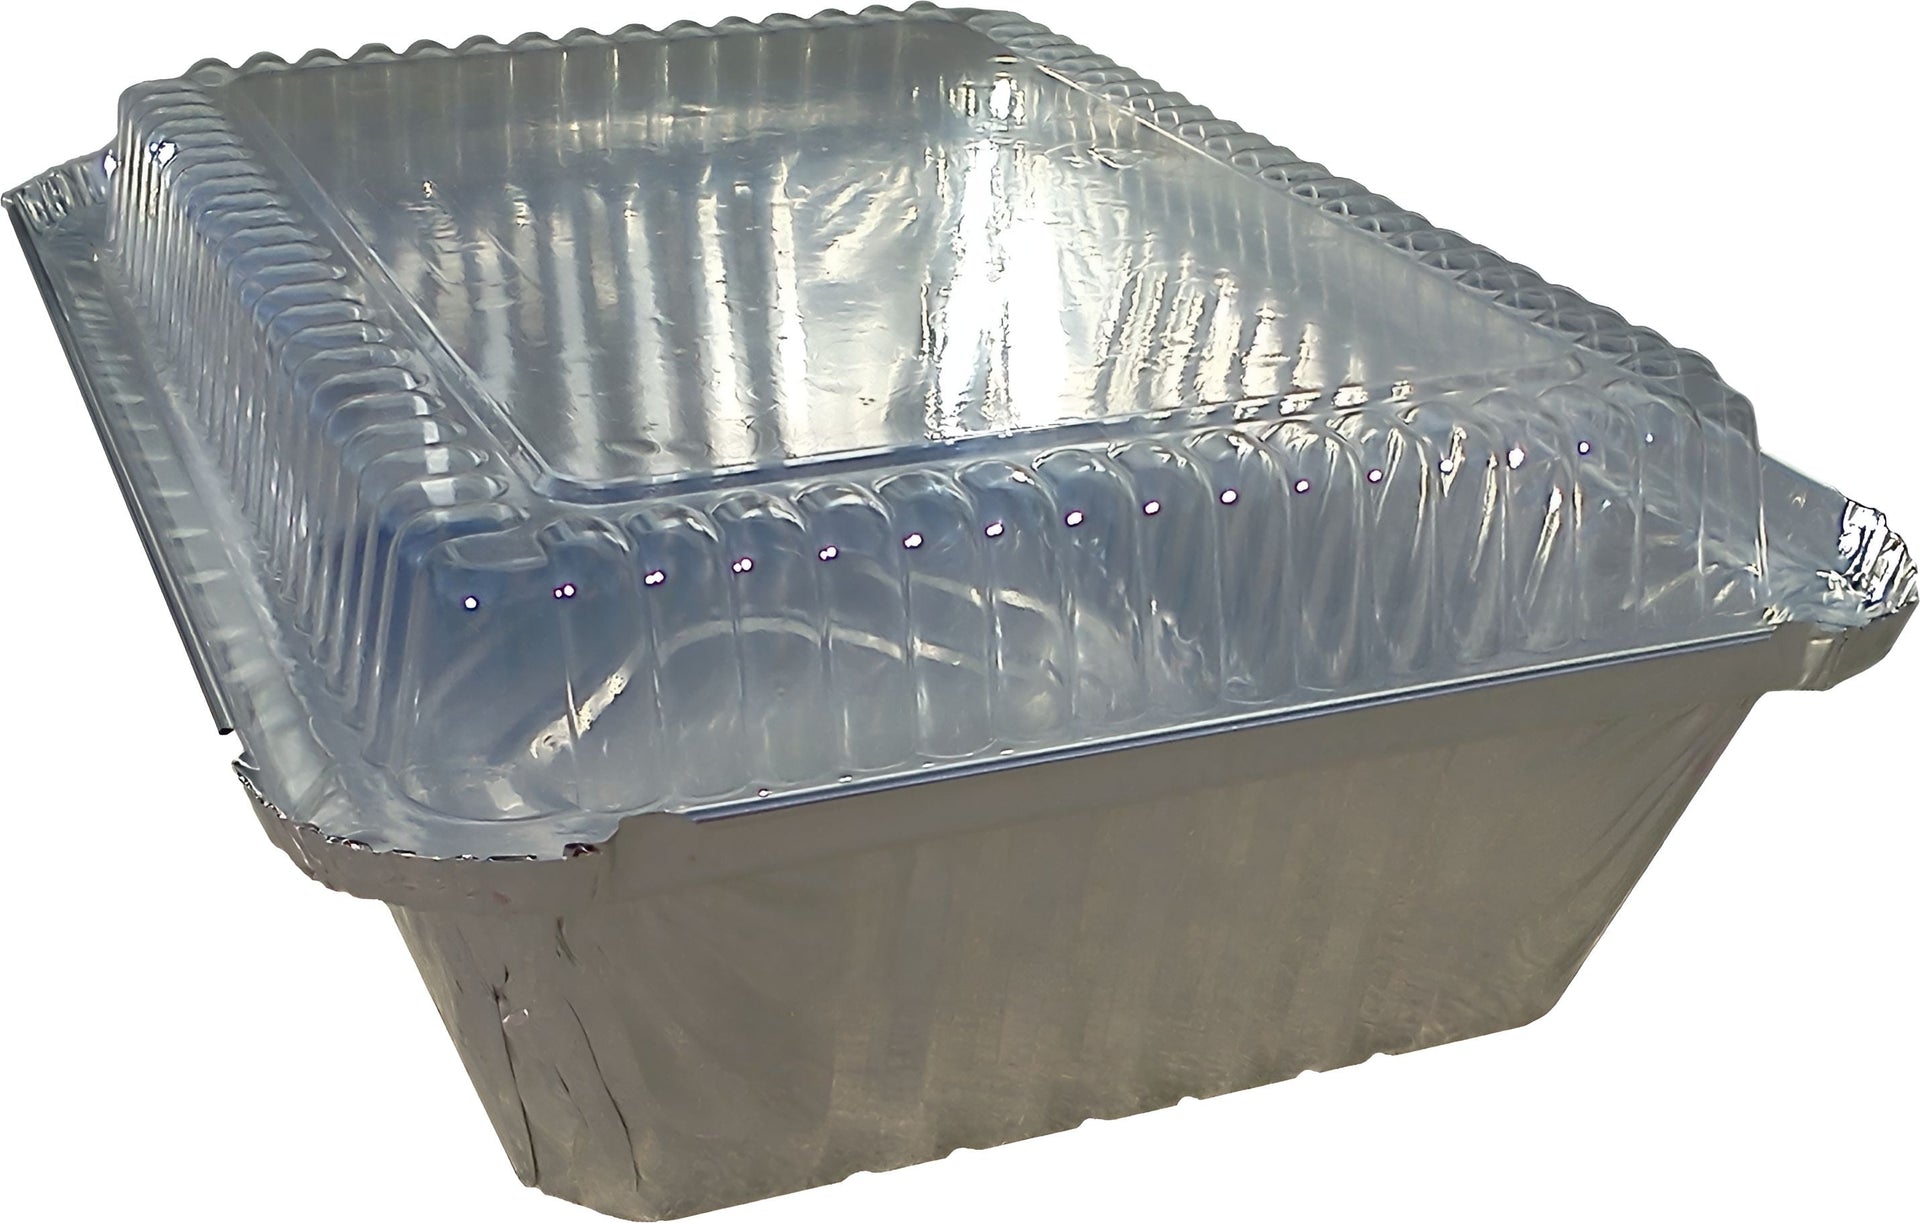 Western Plastics - 1 lb Oblong Foil Container, 1000/Cs - 5705